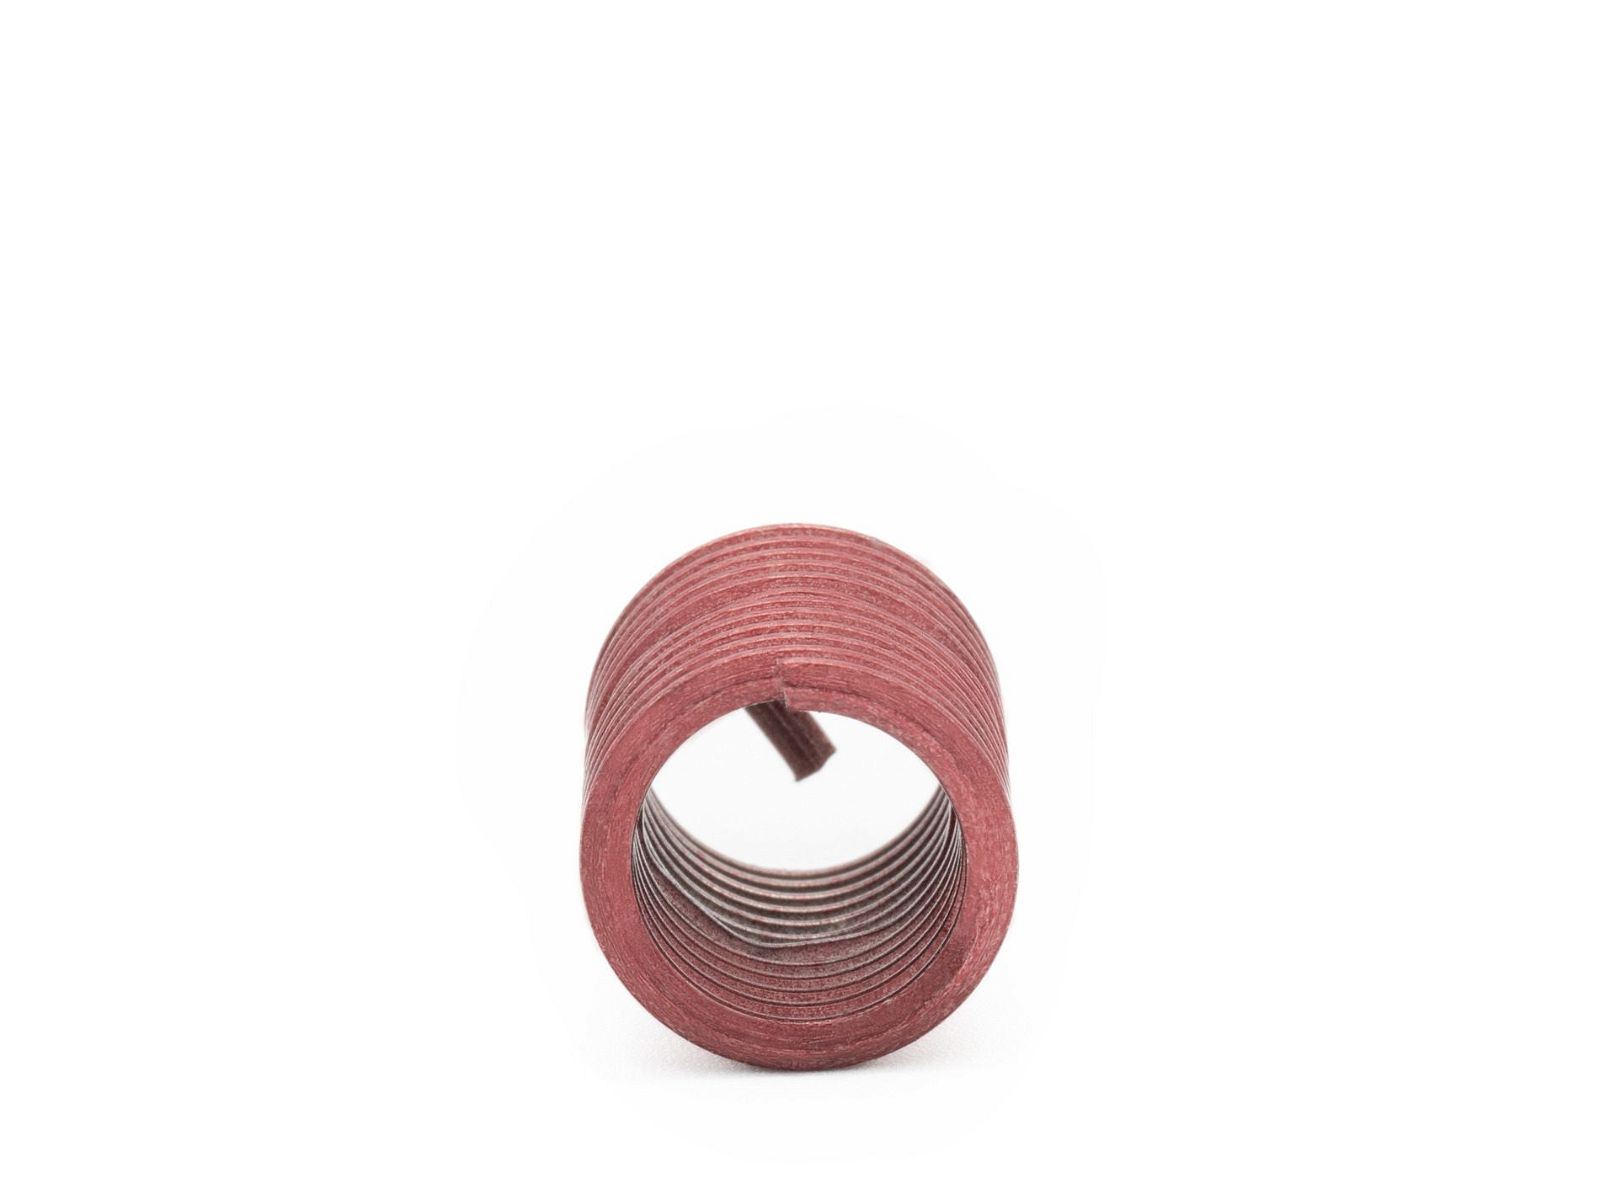 BaerCoil Wire Thread Inserts M 3.5 x 0.6 - 2.0 D (7 mm) - screw grip (screw locking) - 100 pcs.